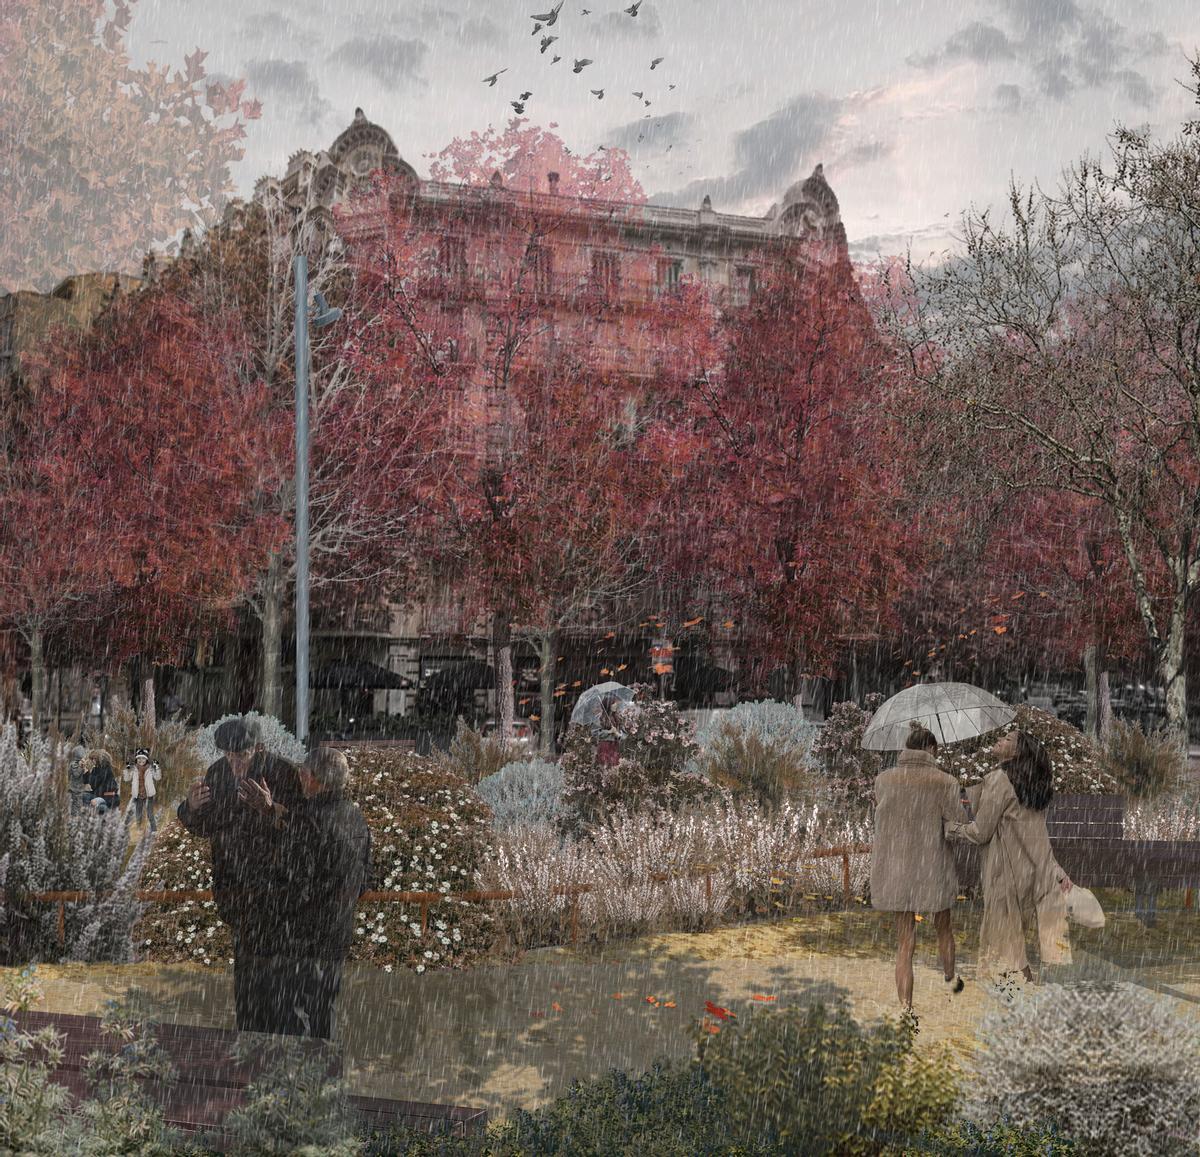 La plaza, tal y como la imagina el laboratorio de arquitectura LandLab, cuando sea otoño, con sus arce de hojas encarnadas.